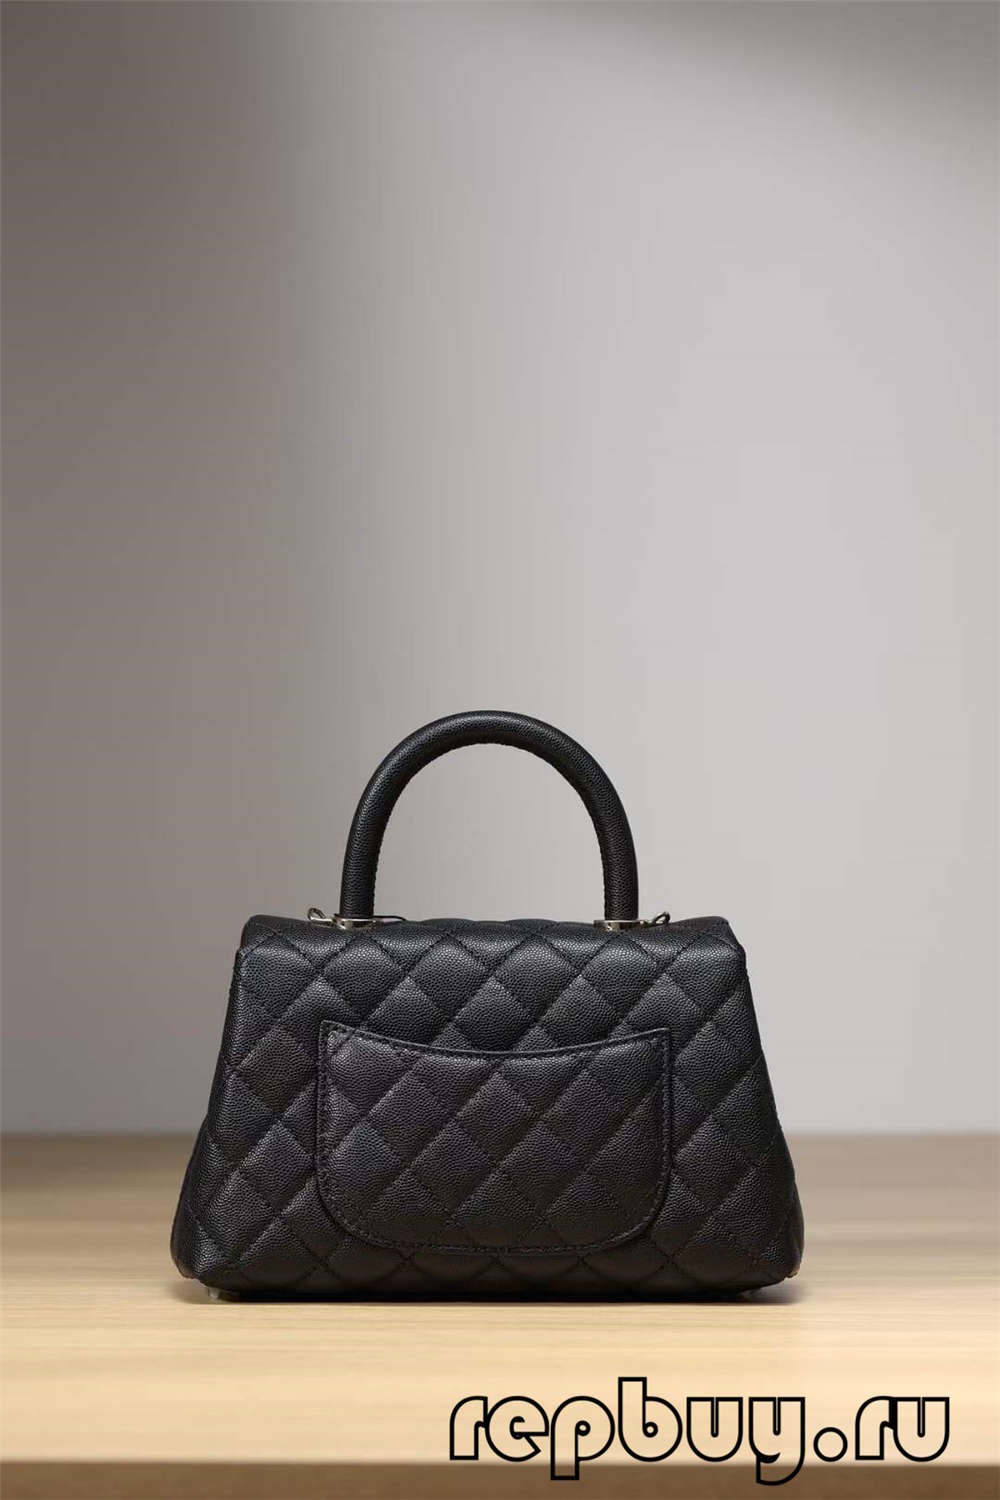 Рэпліка сумкі Chanel Coco Handle Top з чорнай залатой спражкай (2022 г. абноўлены) - Інтэрнэт-крама падробленай сумкі Louis Vuitton, копія дызайнерскай сумкі ru